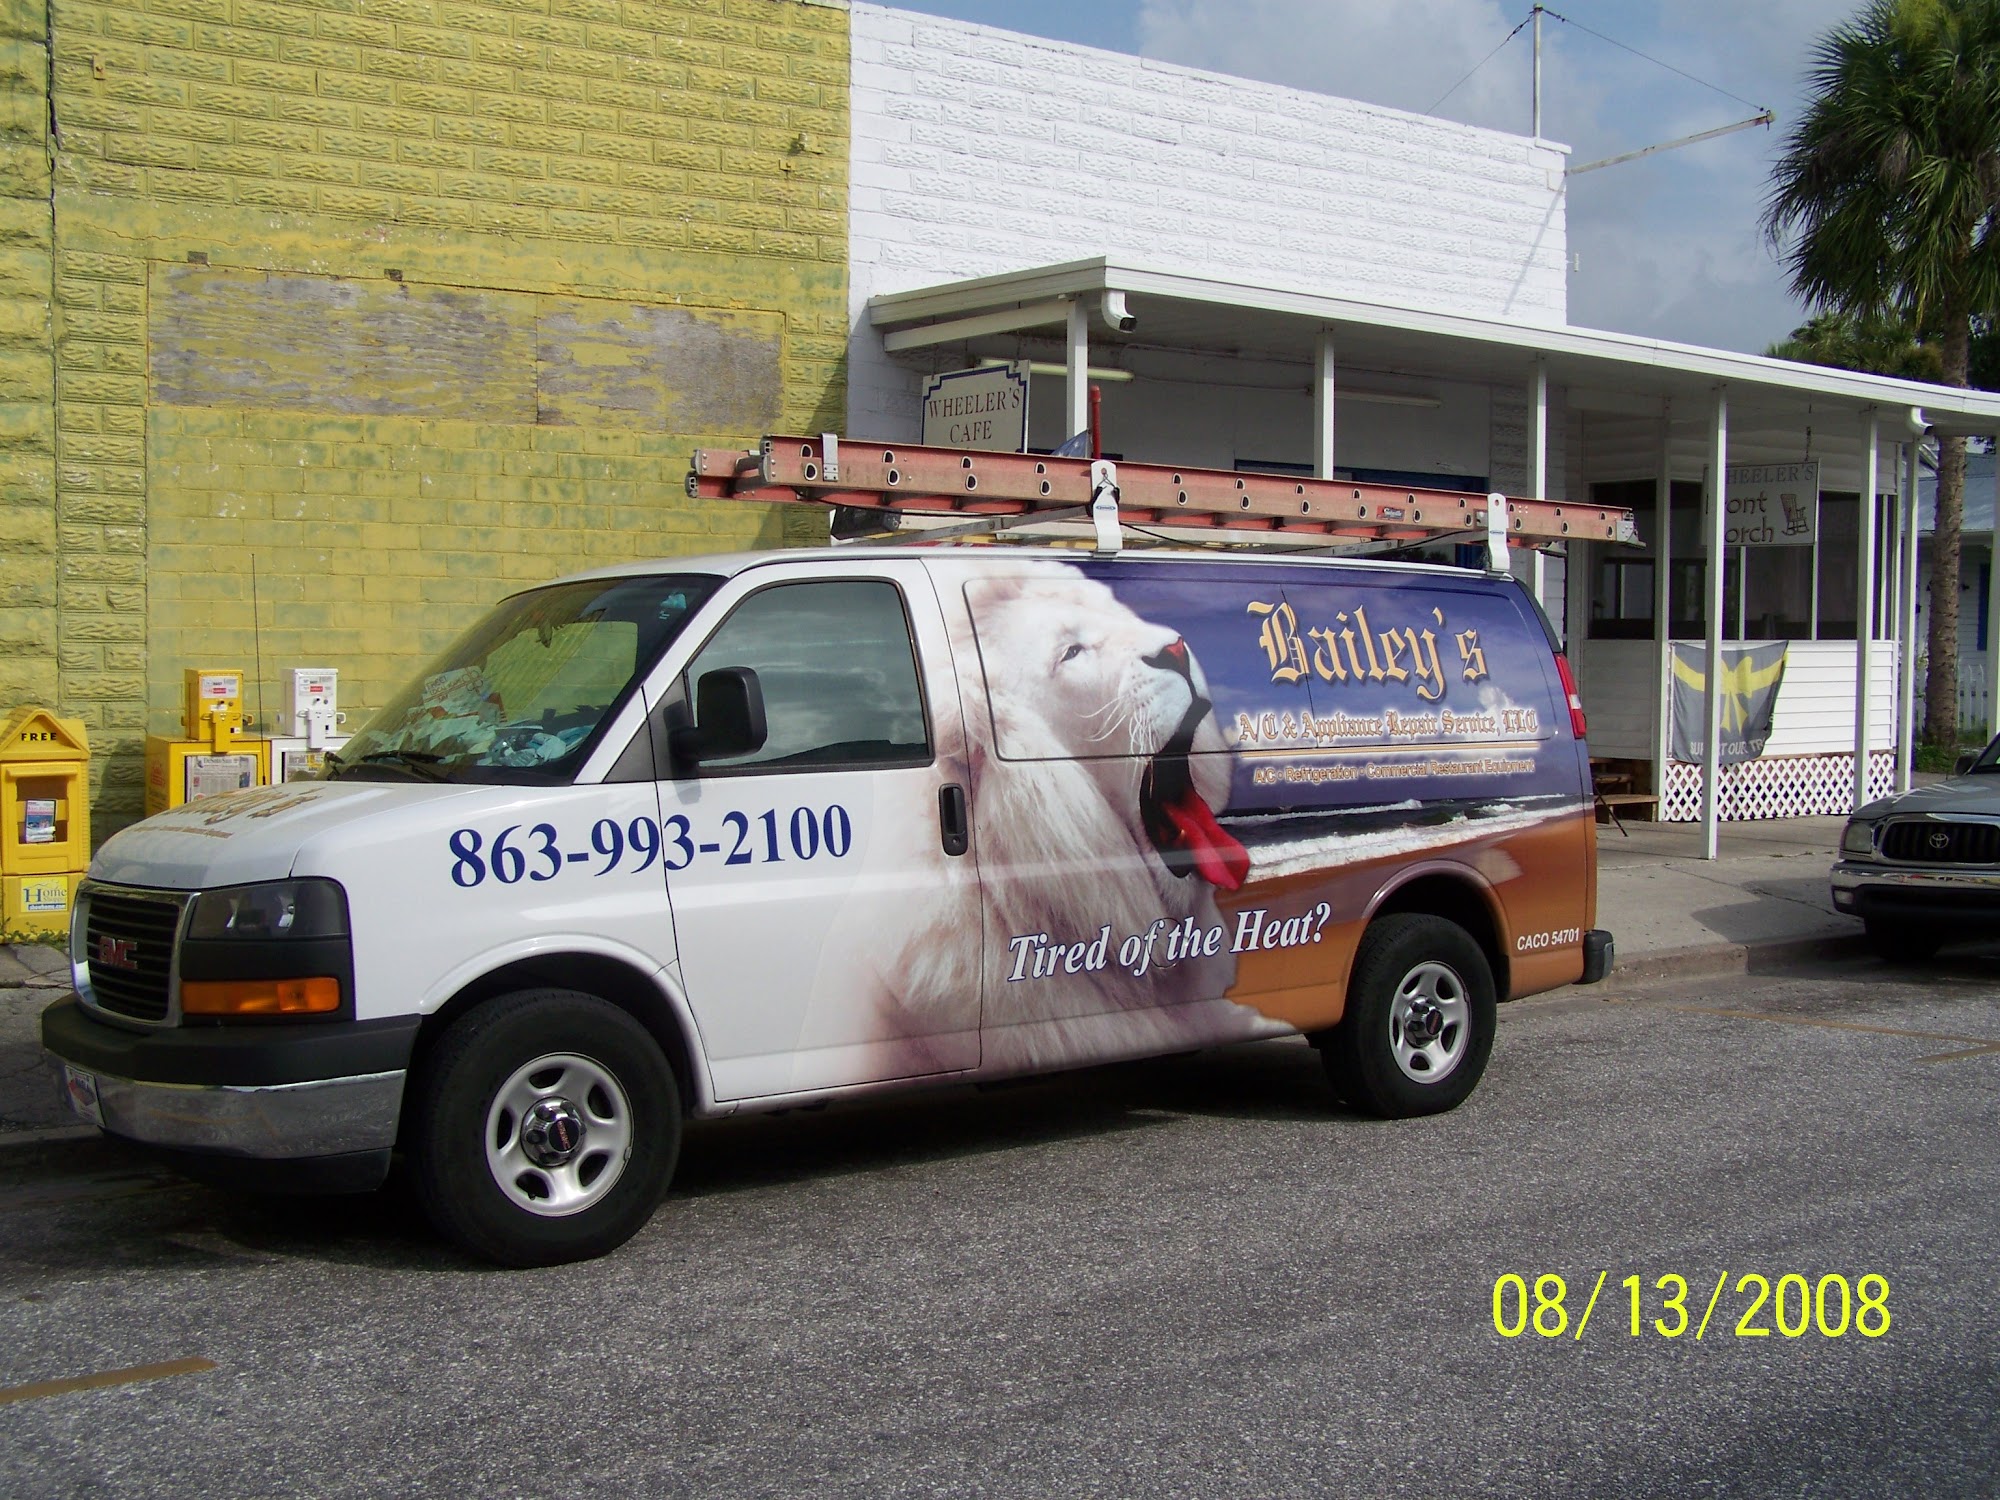 Bailey's AC & Appliance Repair Service LLC